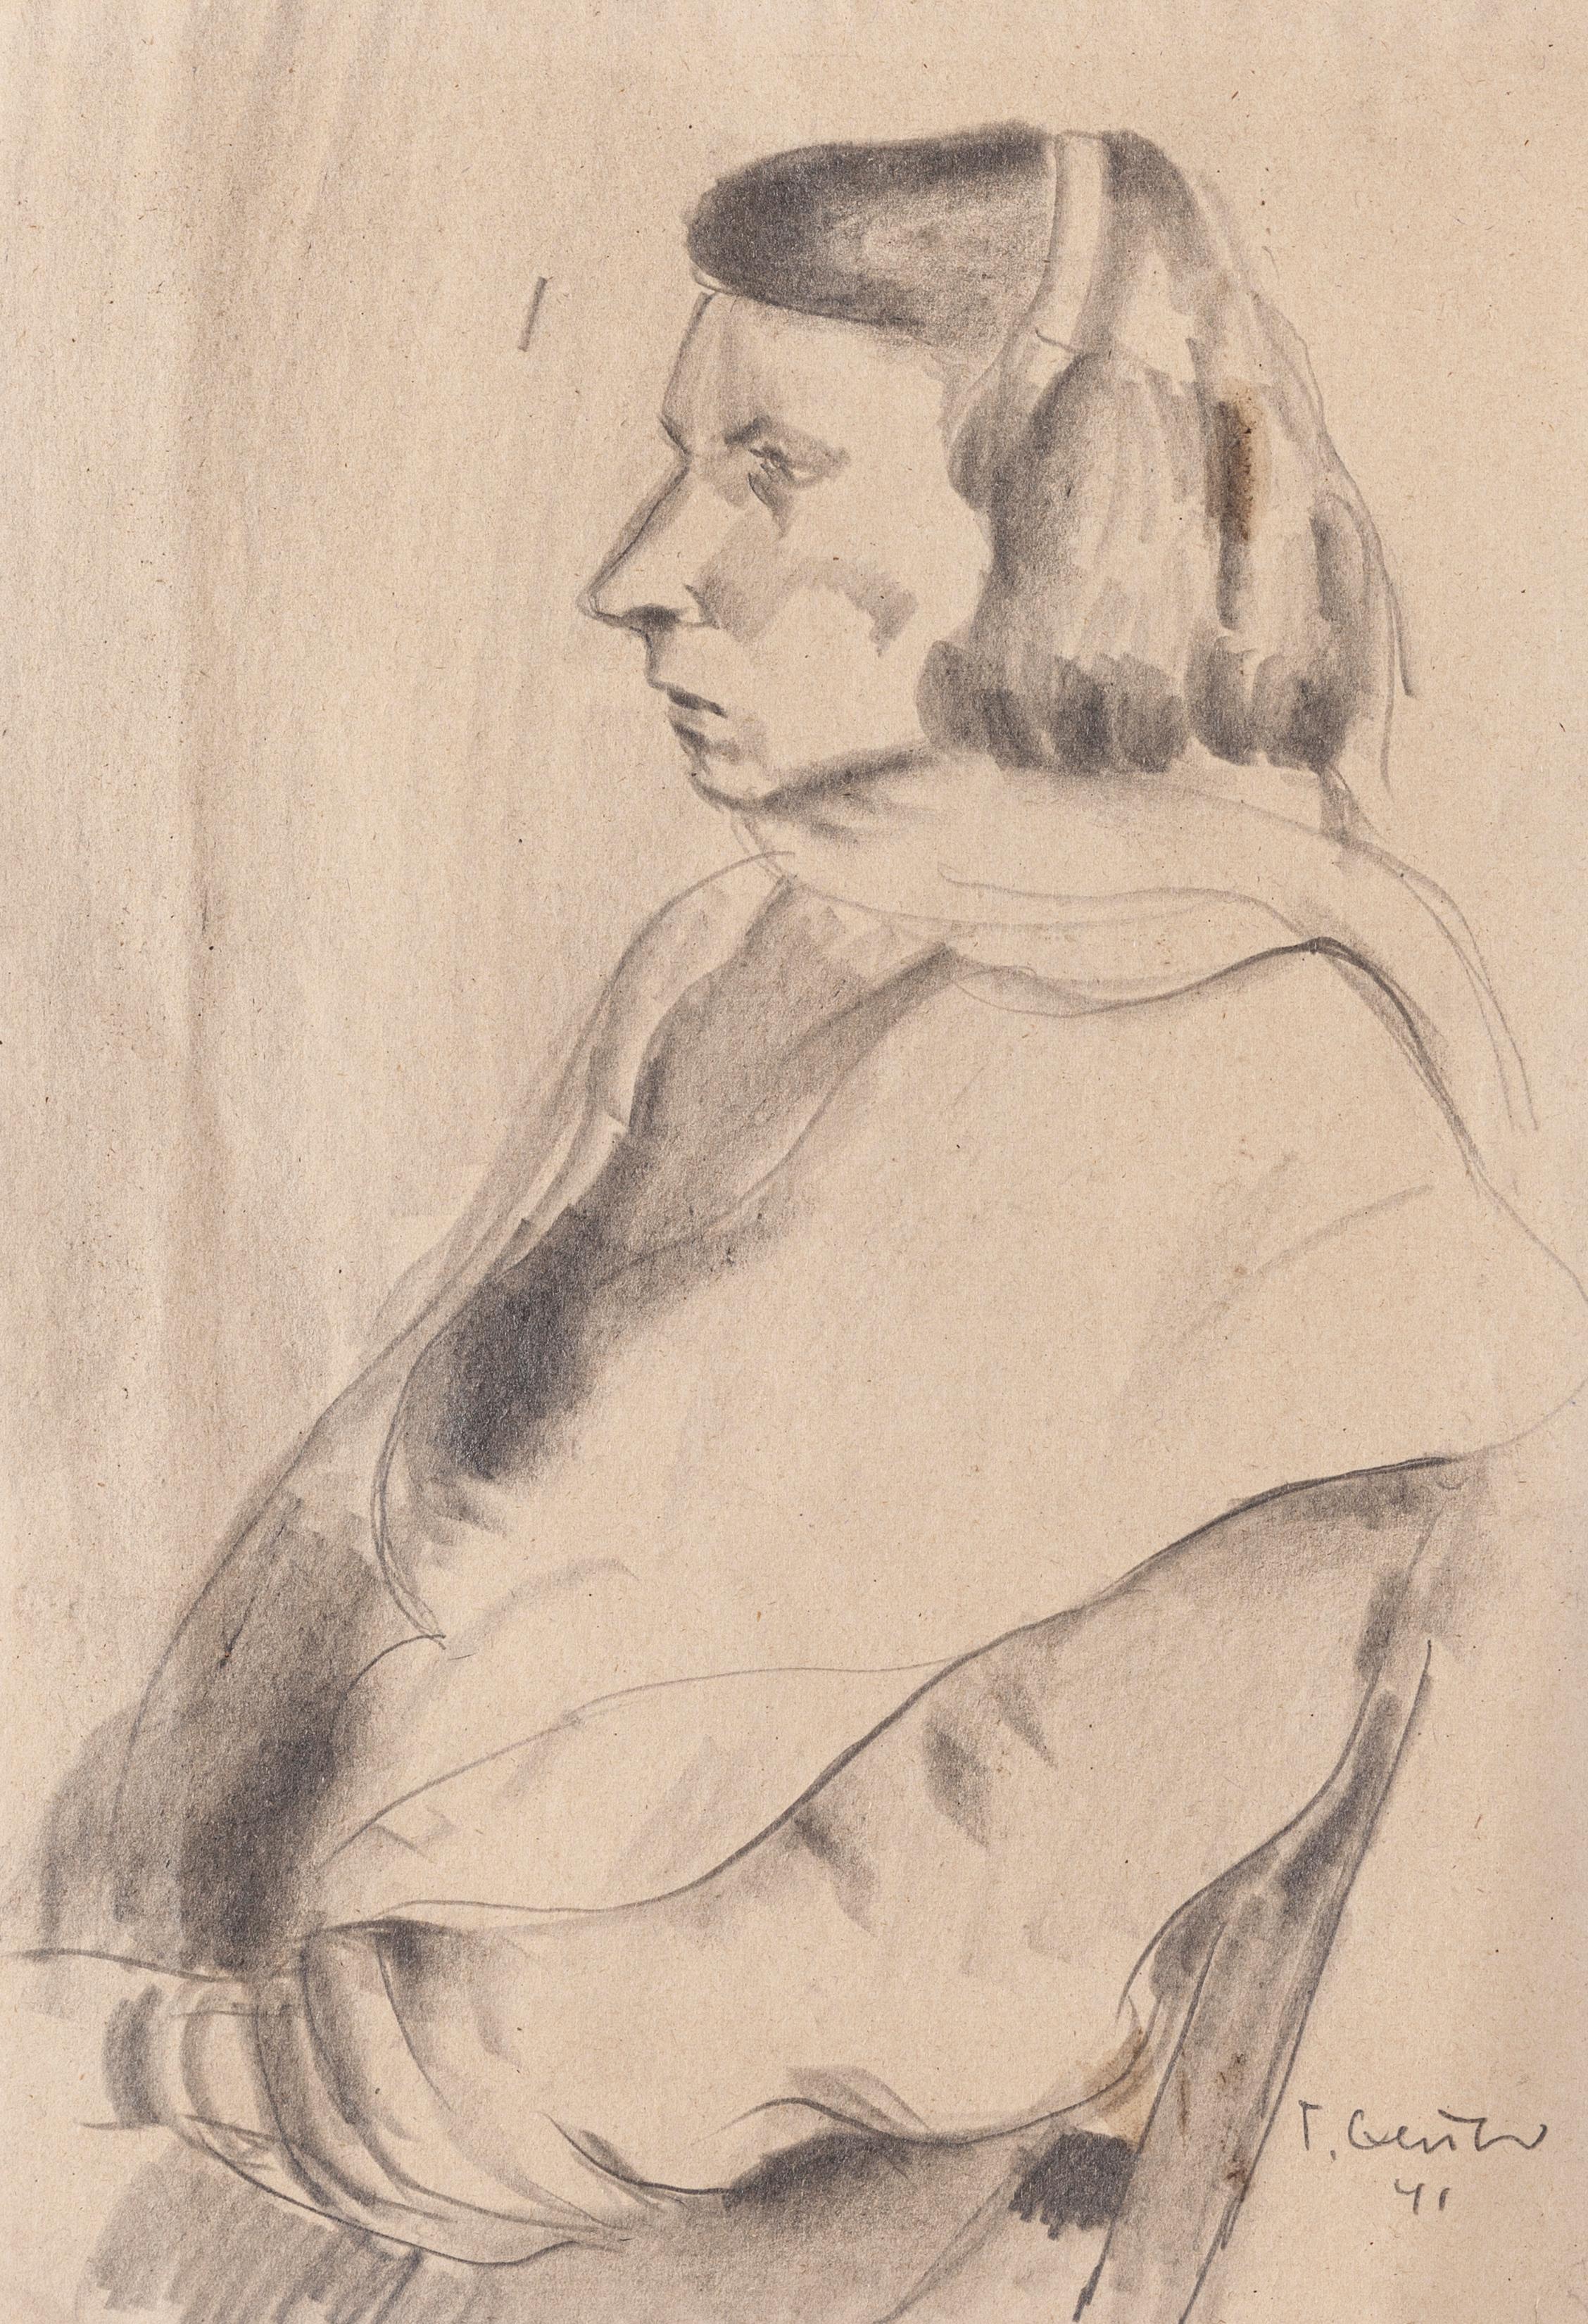 Portrait - dessin original au crayon par T. Gertner - 1941